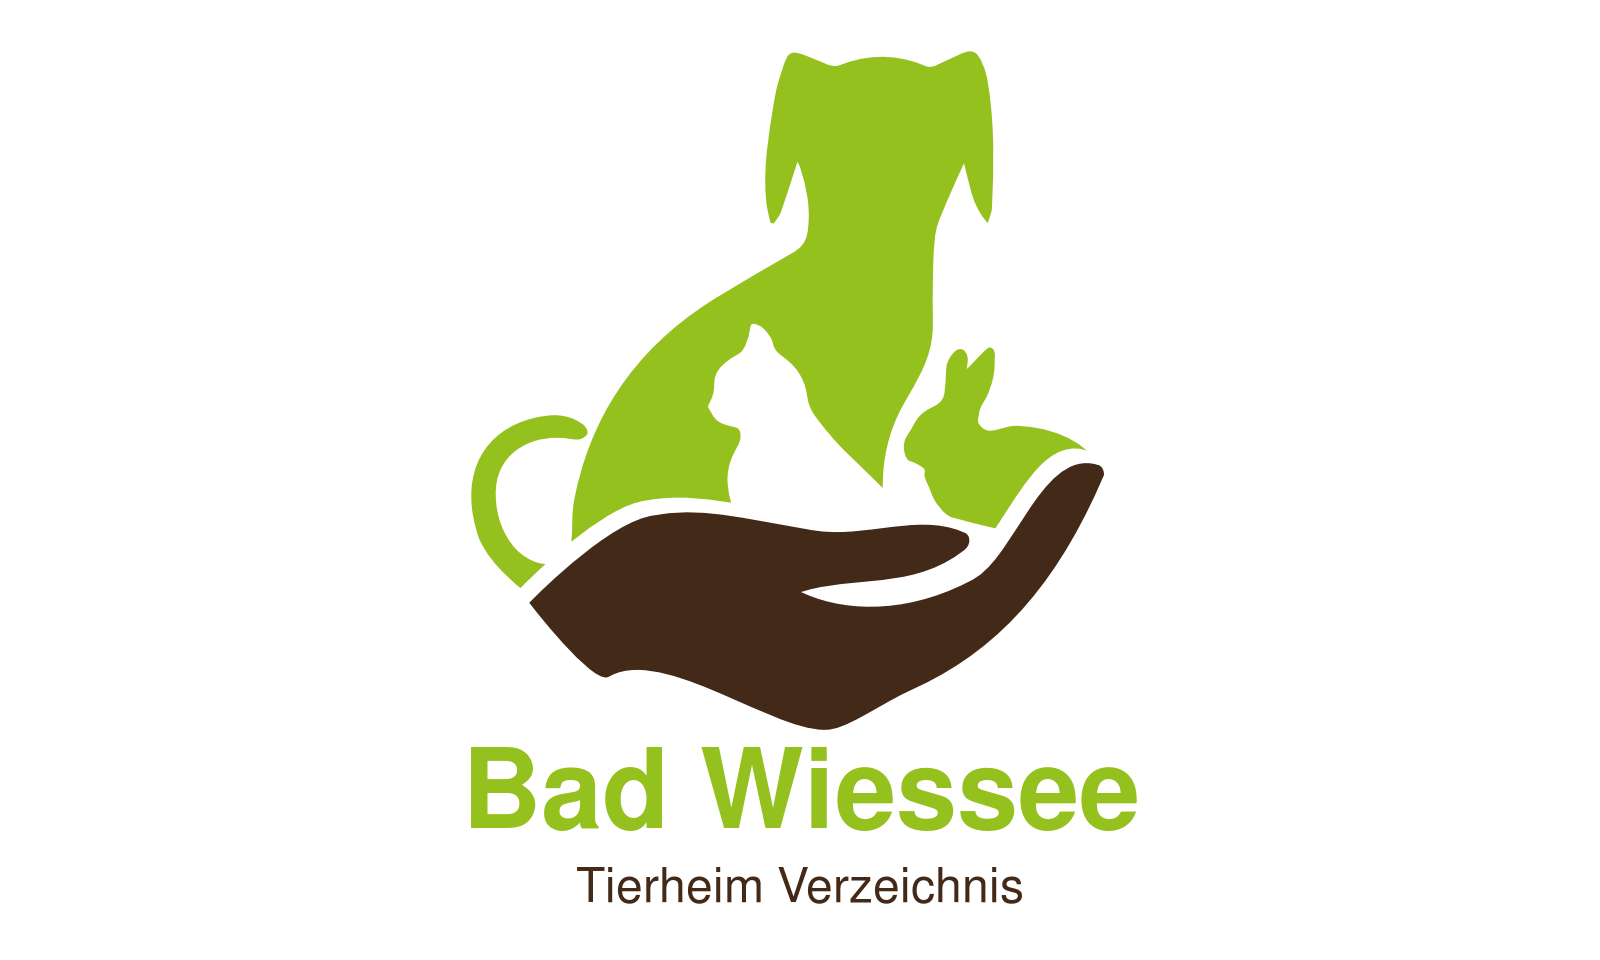 Tierheim Bad Wiessee